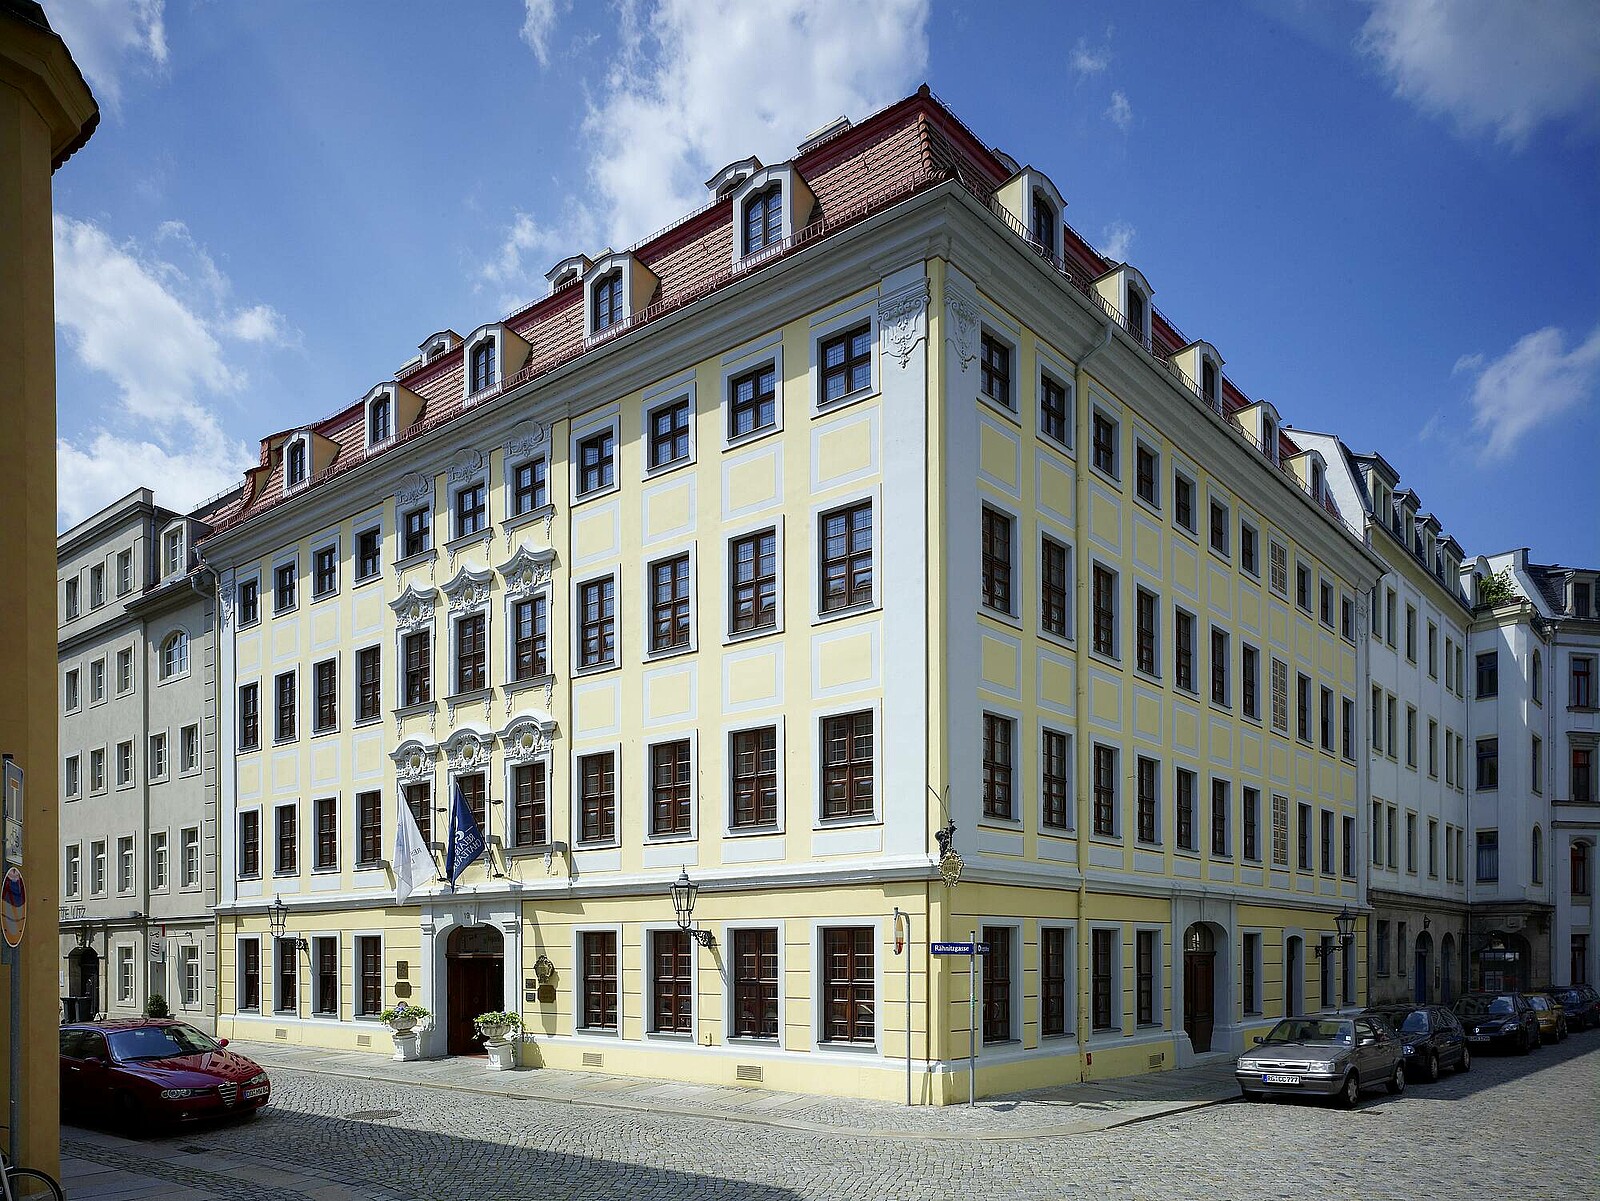 Genießen Sie einen Urlaub im hochwertigen Luxushotel in Elbflorenz mit Service auf höchstem Niveau und als idealer Ausgangspunkt für Ausflüge in und um Dresden gelegen.